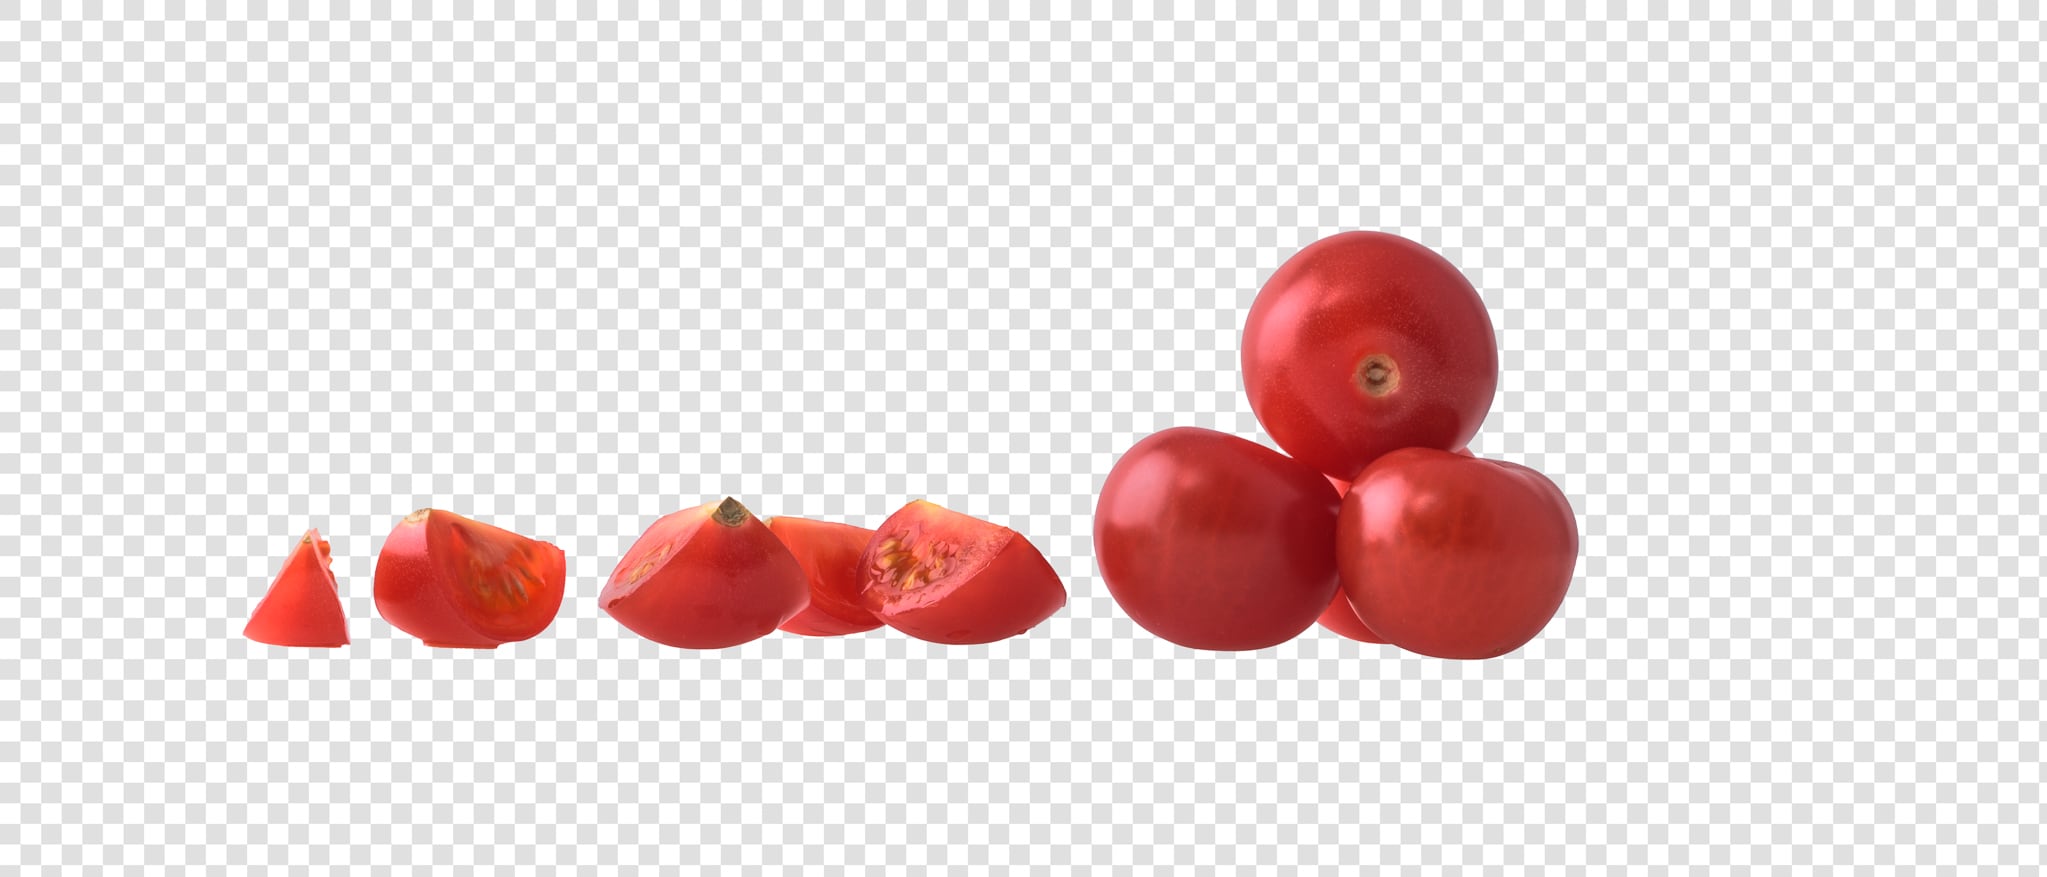 Cherry PSD layered image